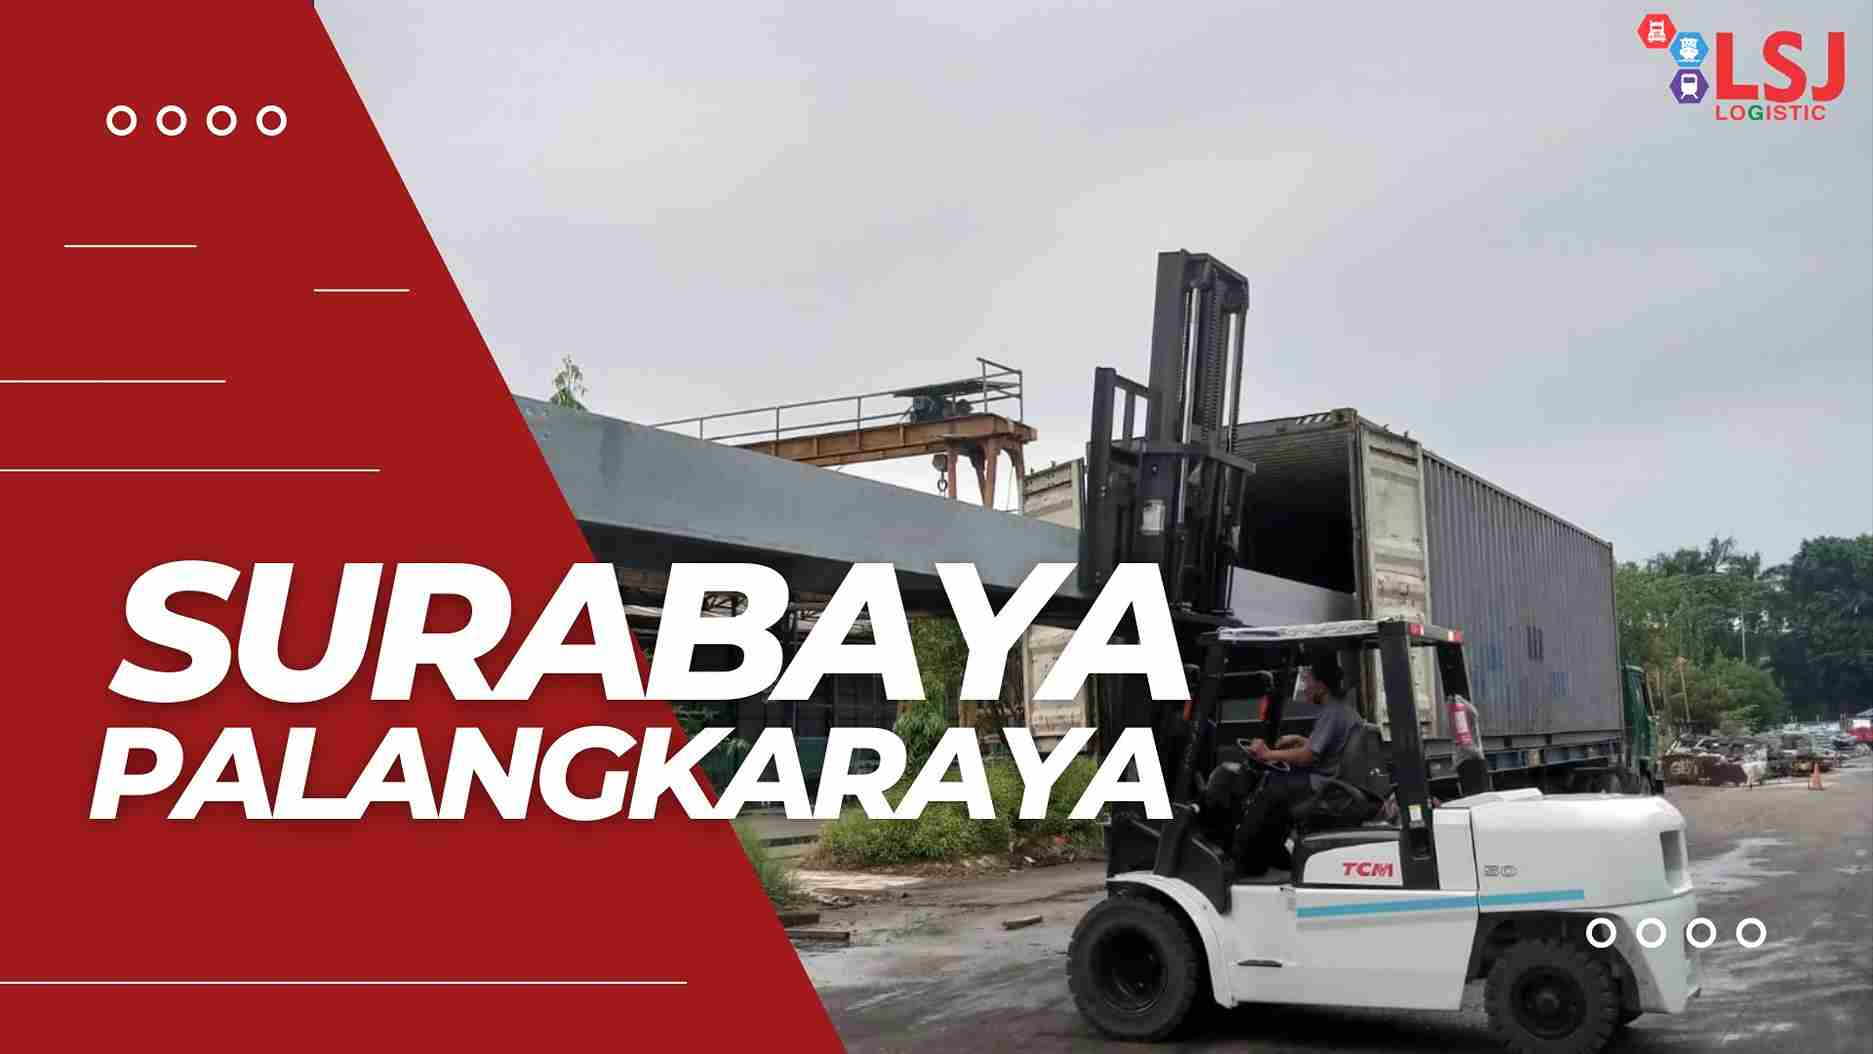 Cargo Container Surabaya Palangkaraya